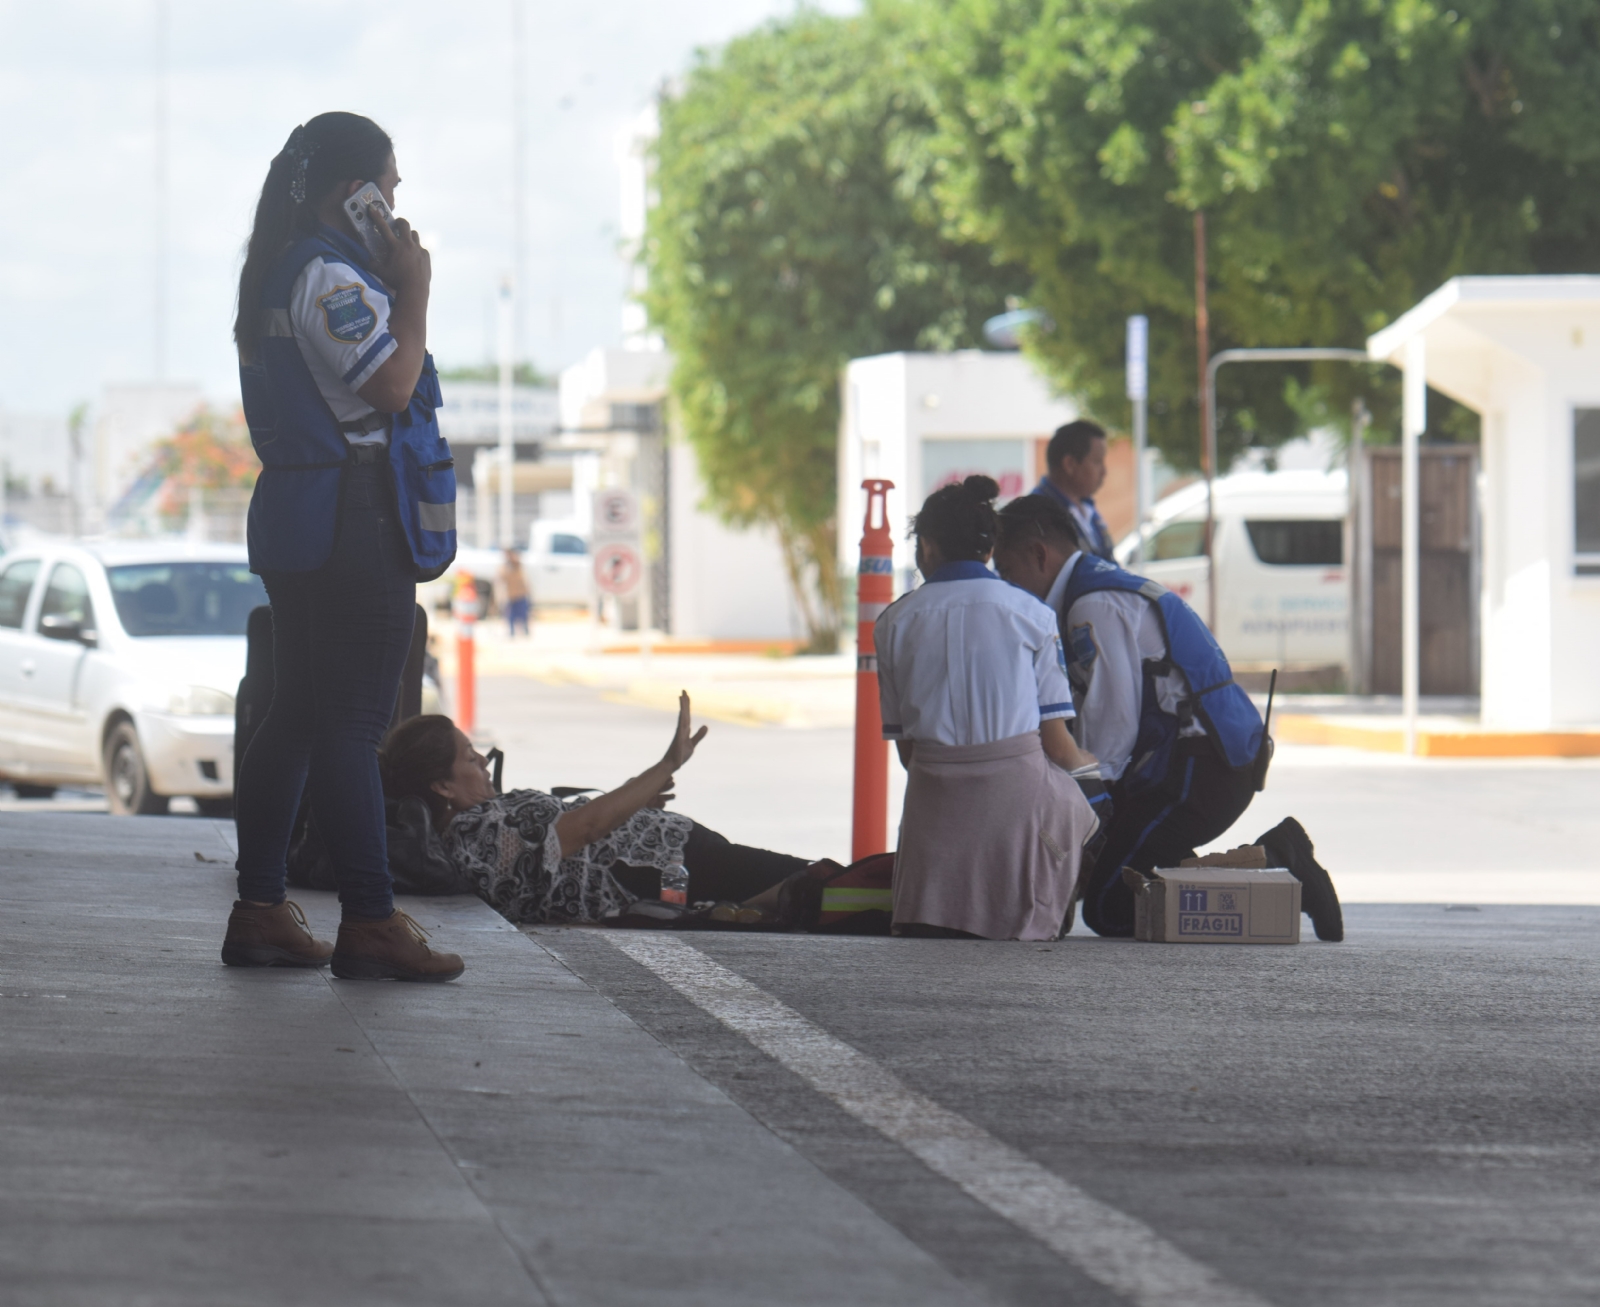 Aeropuerto de Mérida: Viaje frustrado; pasajera se fractura el tobillo